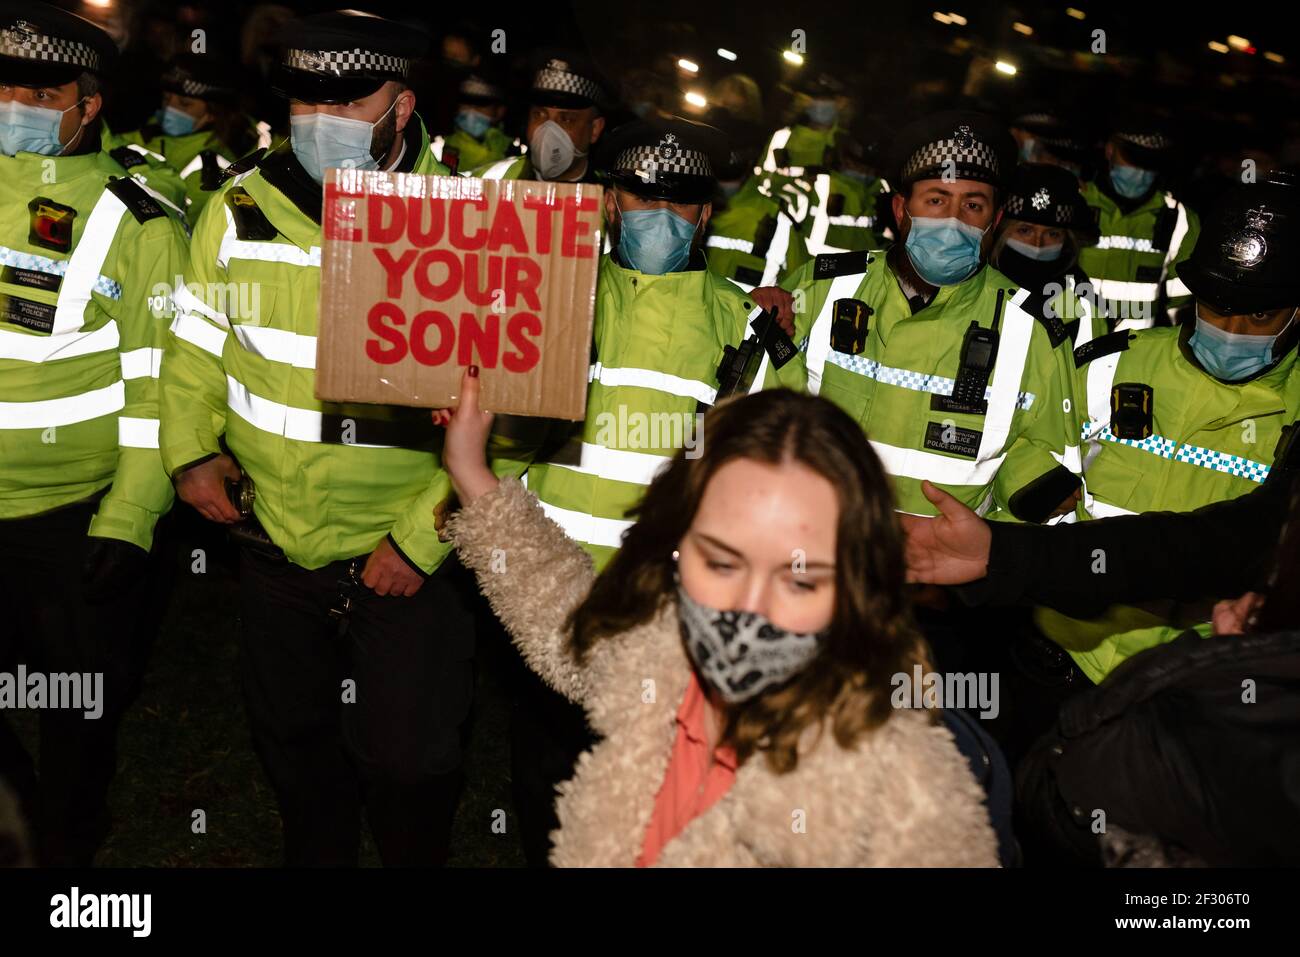 Londres, Royaume-Uni - 13 mars 2021 : veillée pour pleurer Sarah Everard tuant et protestant contre la violence sexuelle. Éduquez vos fils. Banque D'Images